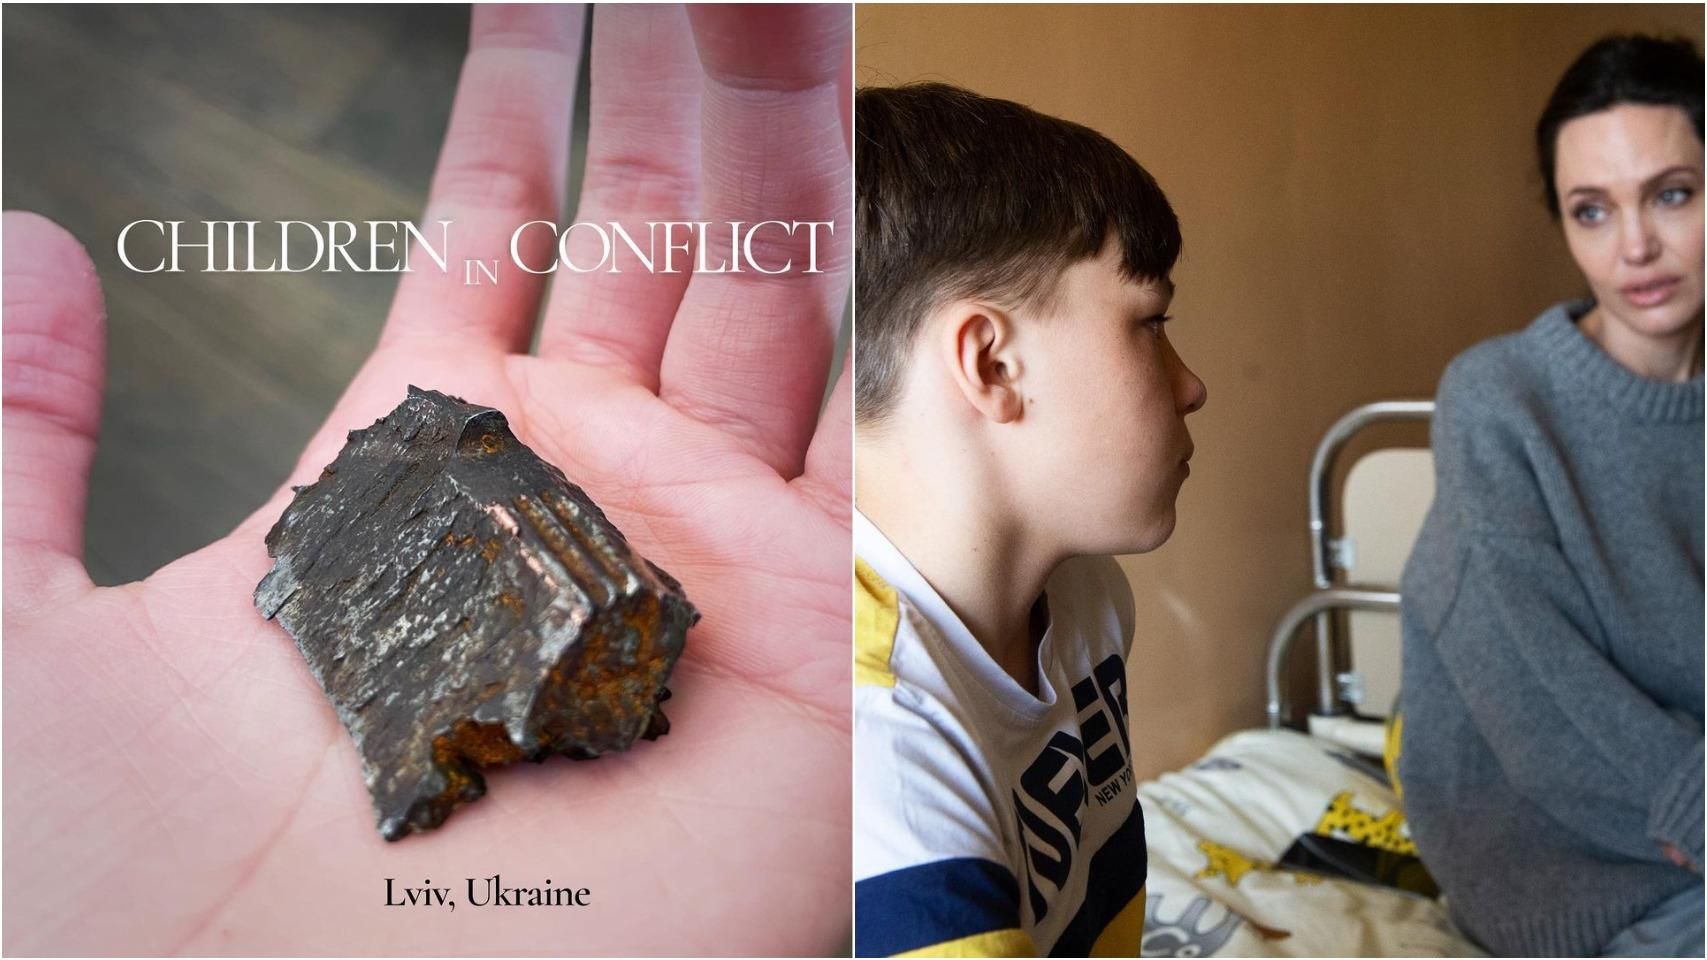 Джолі вперше в інстаграмі прокоментувала візит в Україну і показала уламок бомби - Кіно